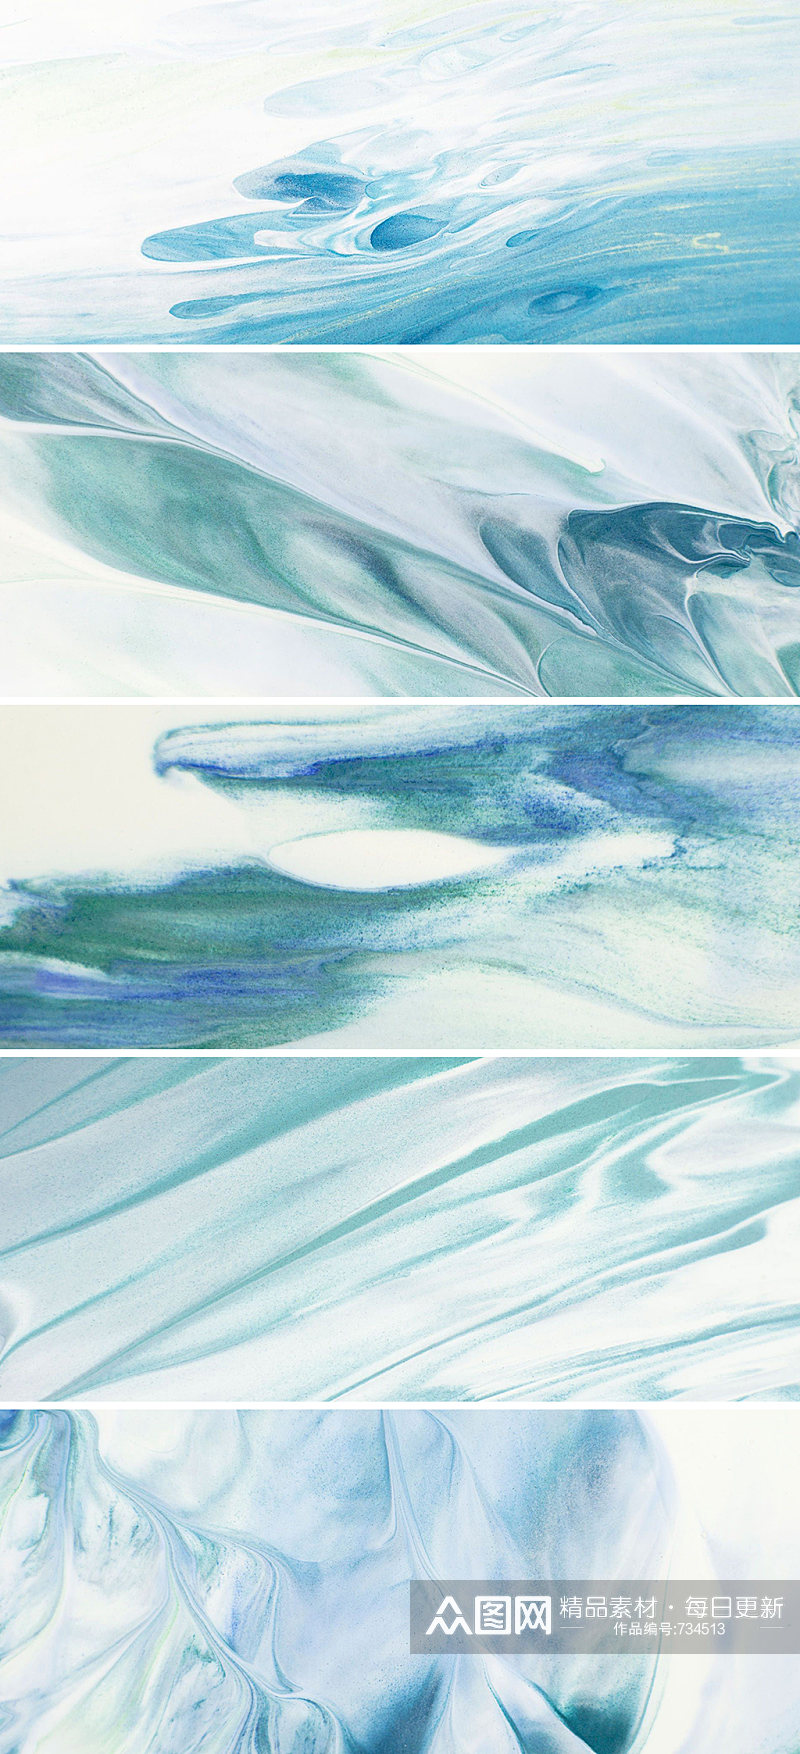 蓝色流动液体纹理高清背景素材